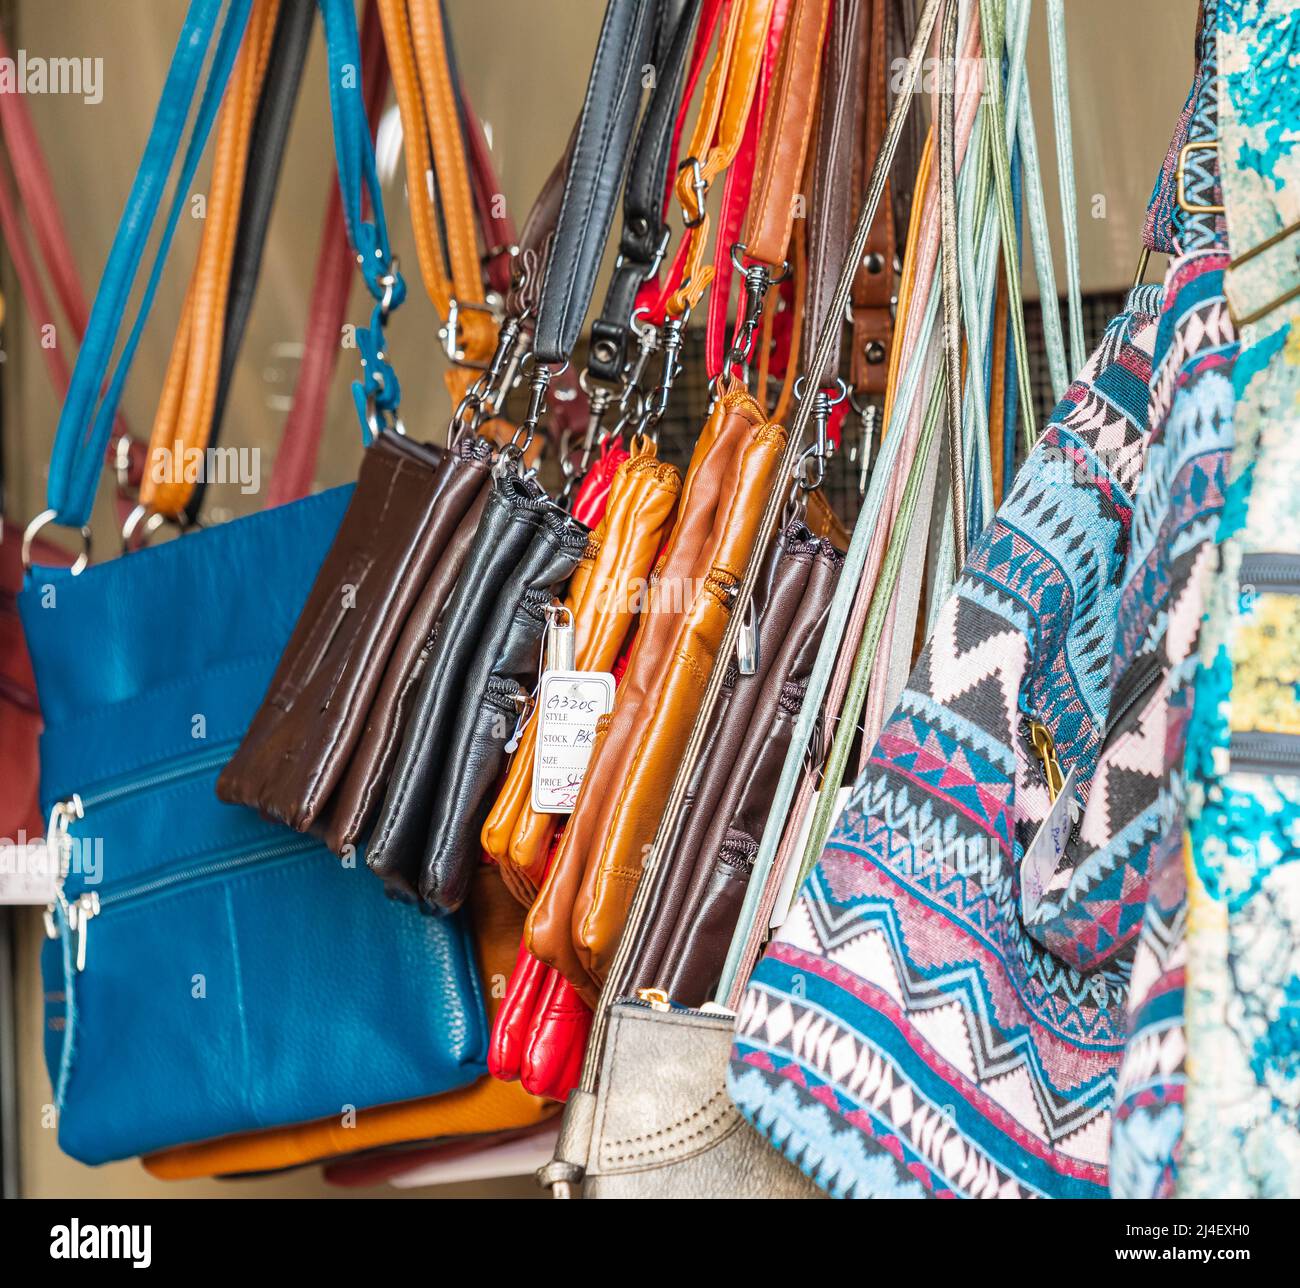 Un mazzo di eleganti borse Sling in pelle e tessuto. Queste borse colorate  sono usate come accessorio di moda popolare da giovani e millennial Foto  stock - Alamy